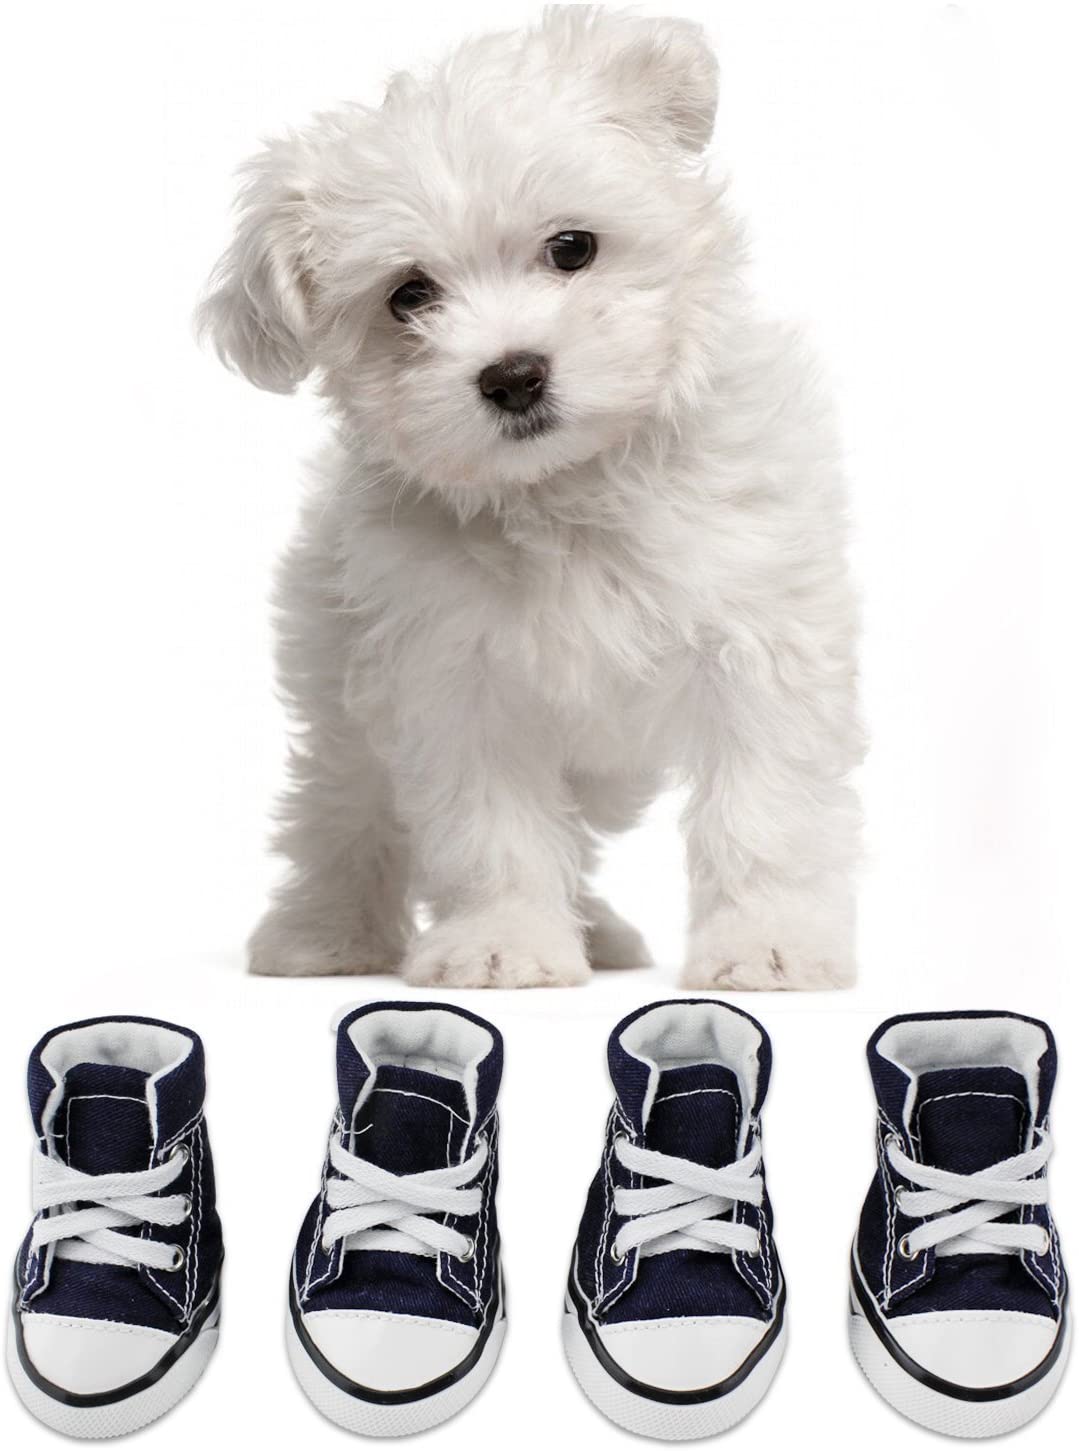  KEESIN Zapatos de Lona Antideslizantes para Perros Cachorros, Protectores de Piernas para Perros, Zapatos Casuales al Aire Libre para Perros #2 